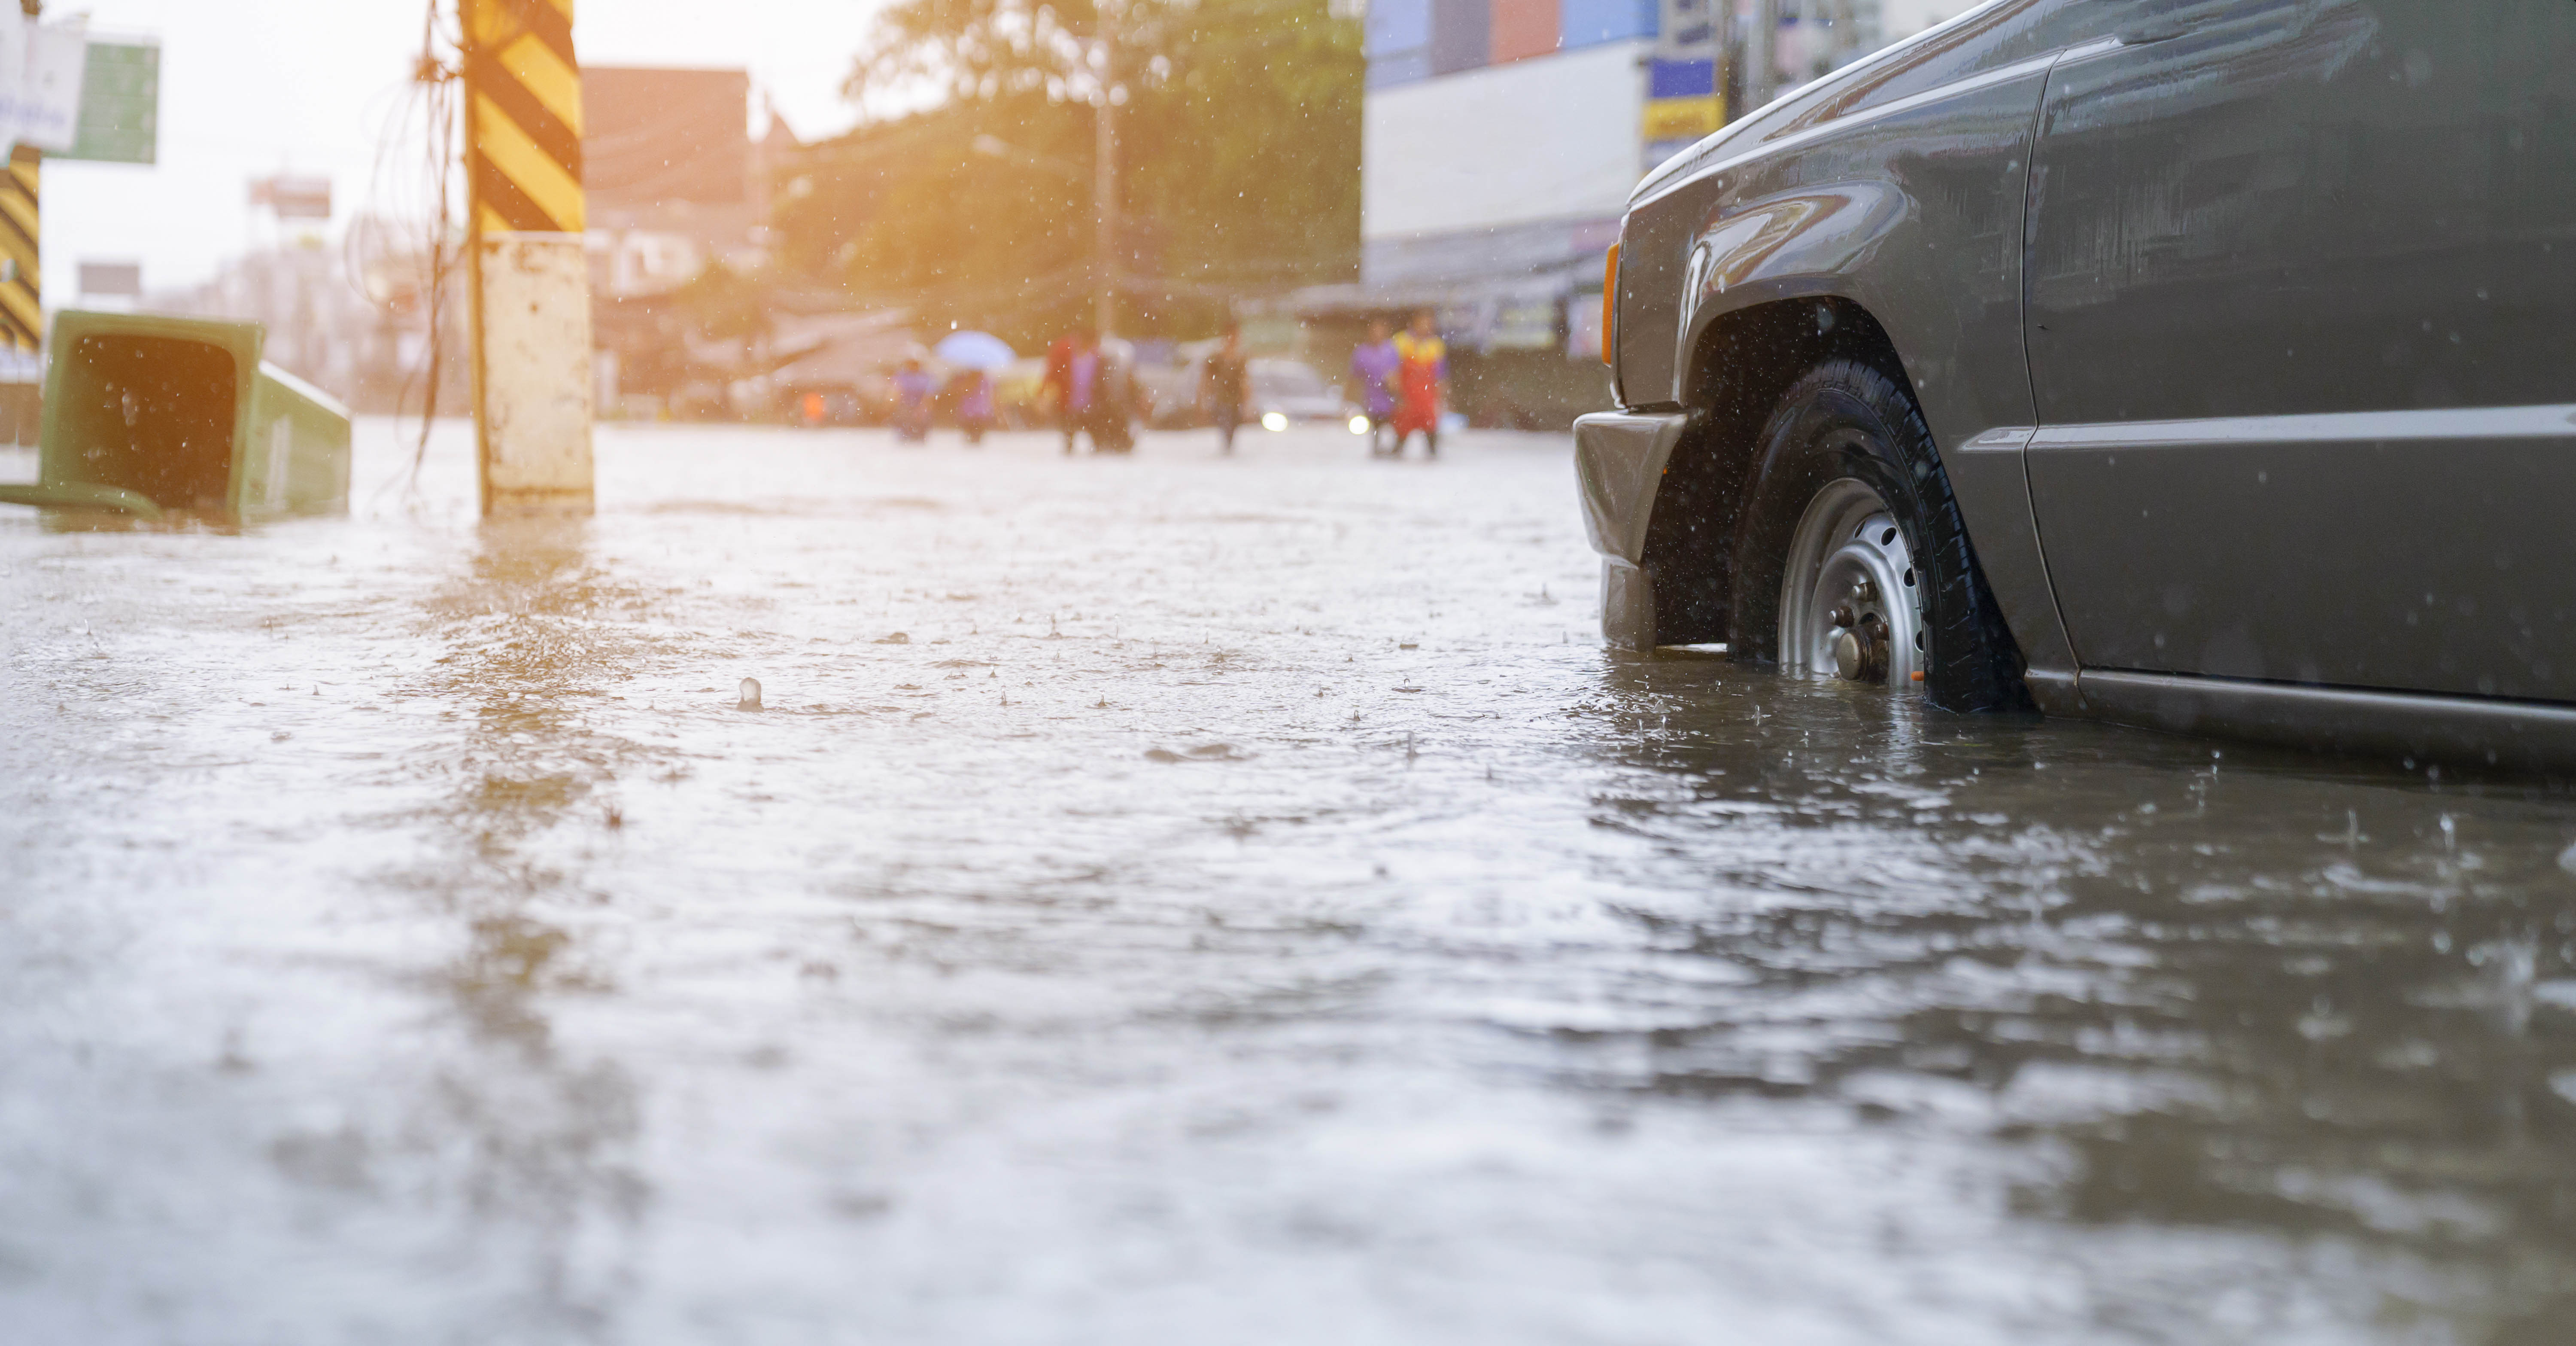 A car drives down a flooded street